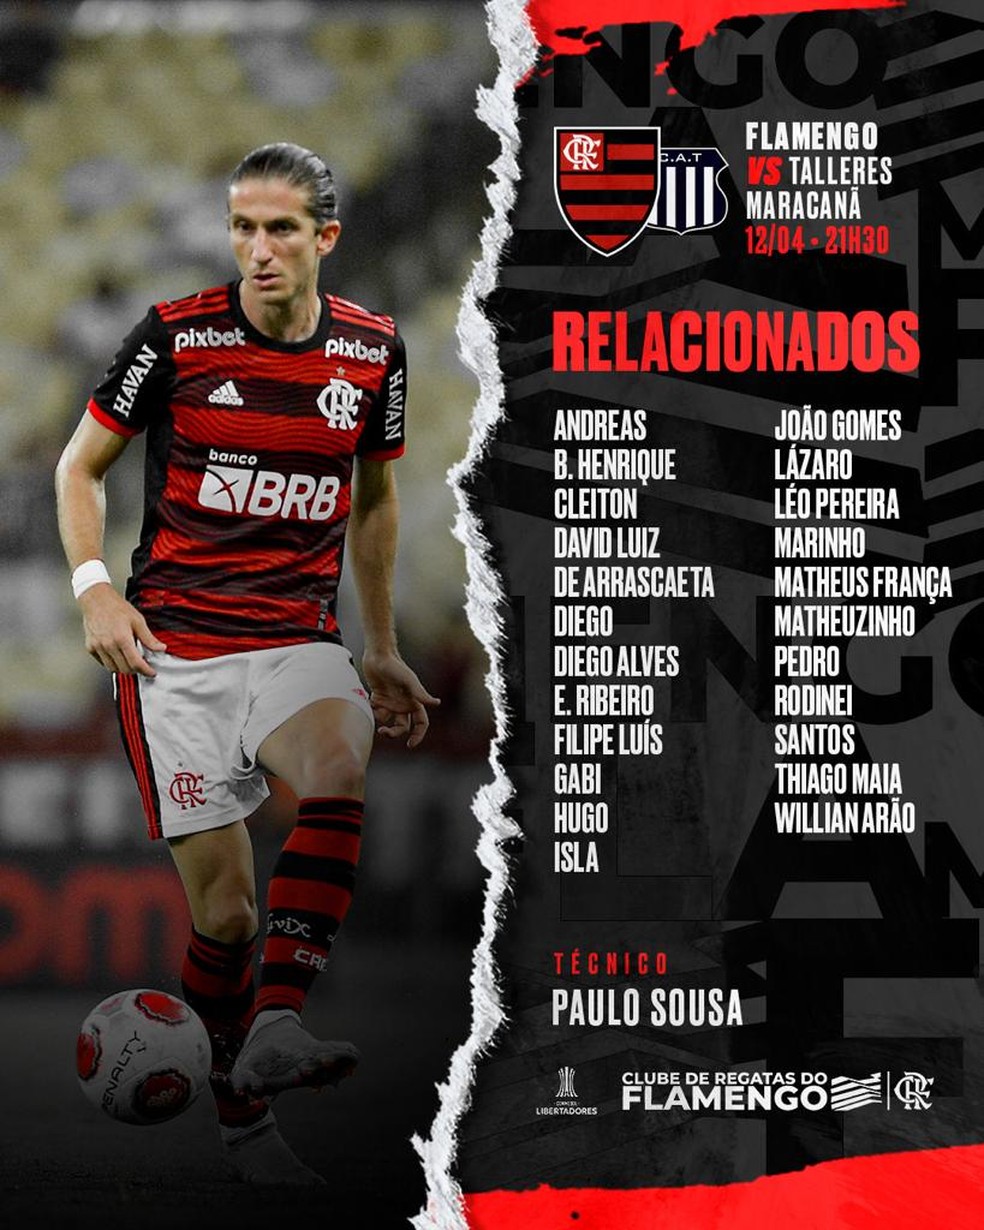 Veja os destaques da apresentação oficial de Isla no Flamengo